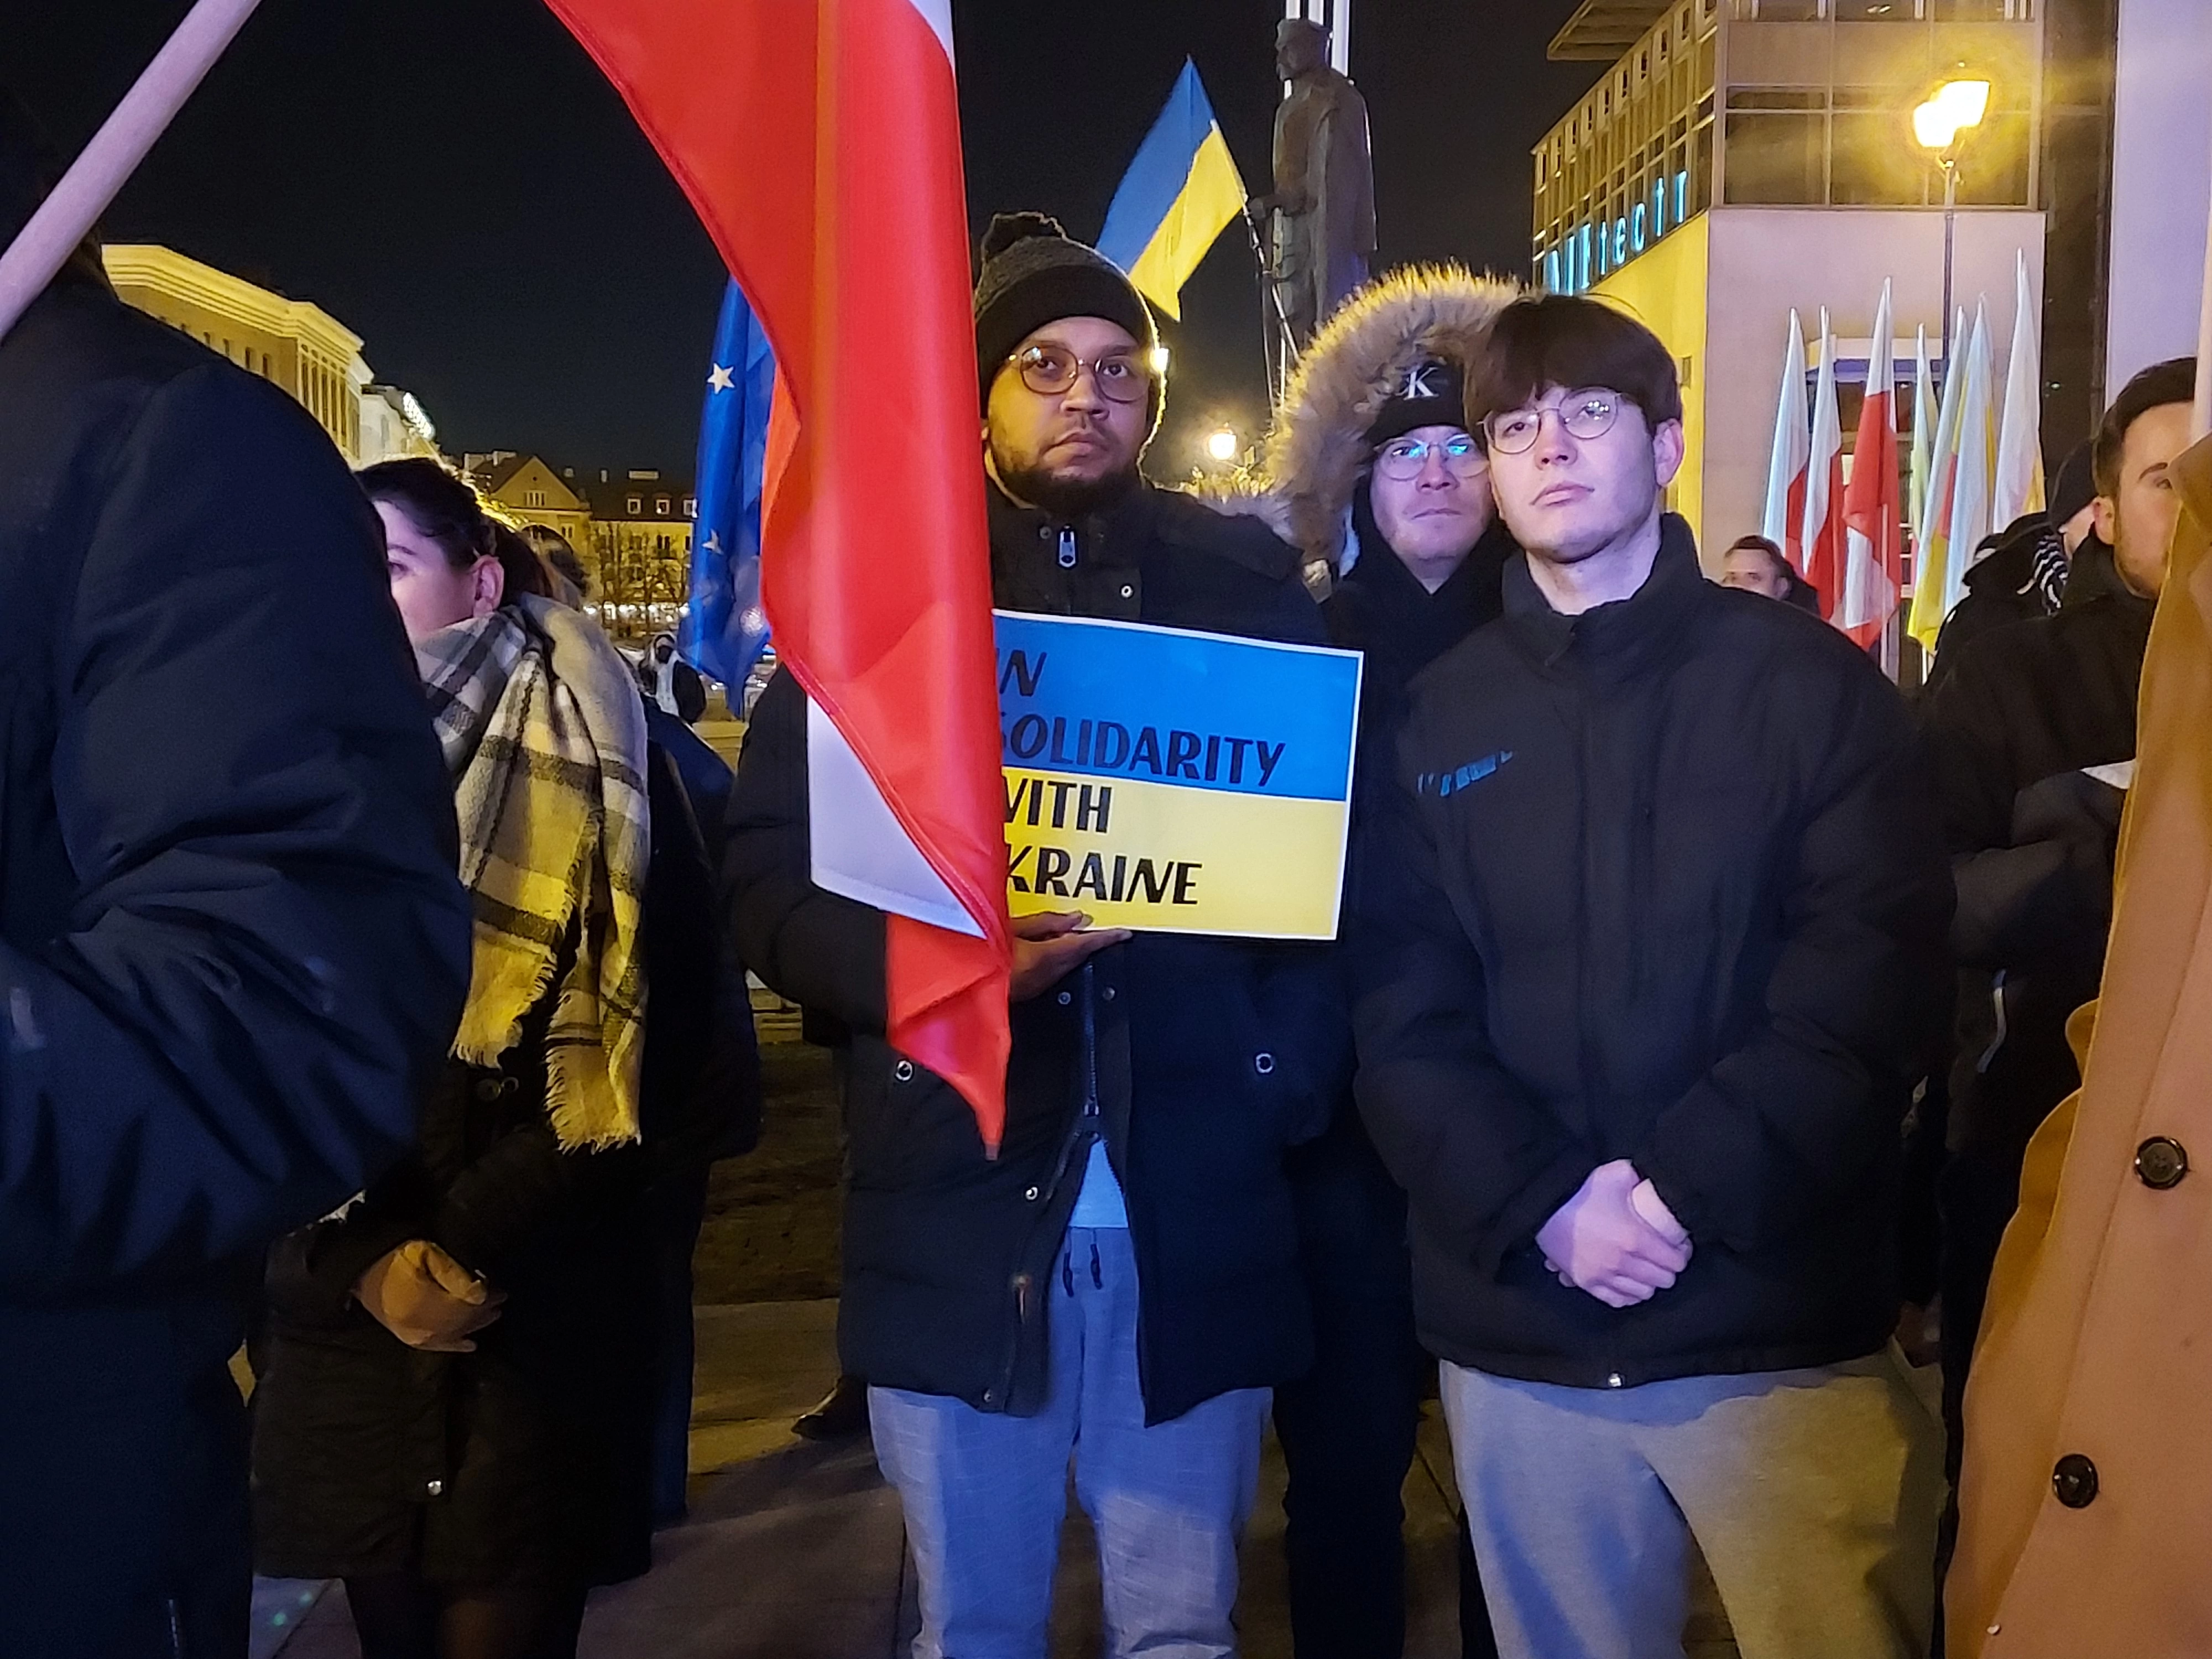 Białystok solidarny z Ukrainą. Wiec solidarności w centrum miasta